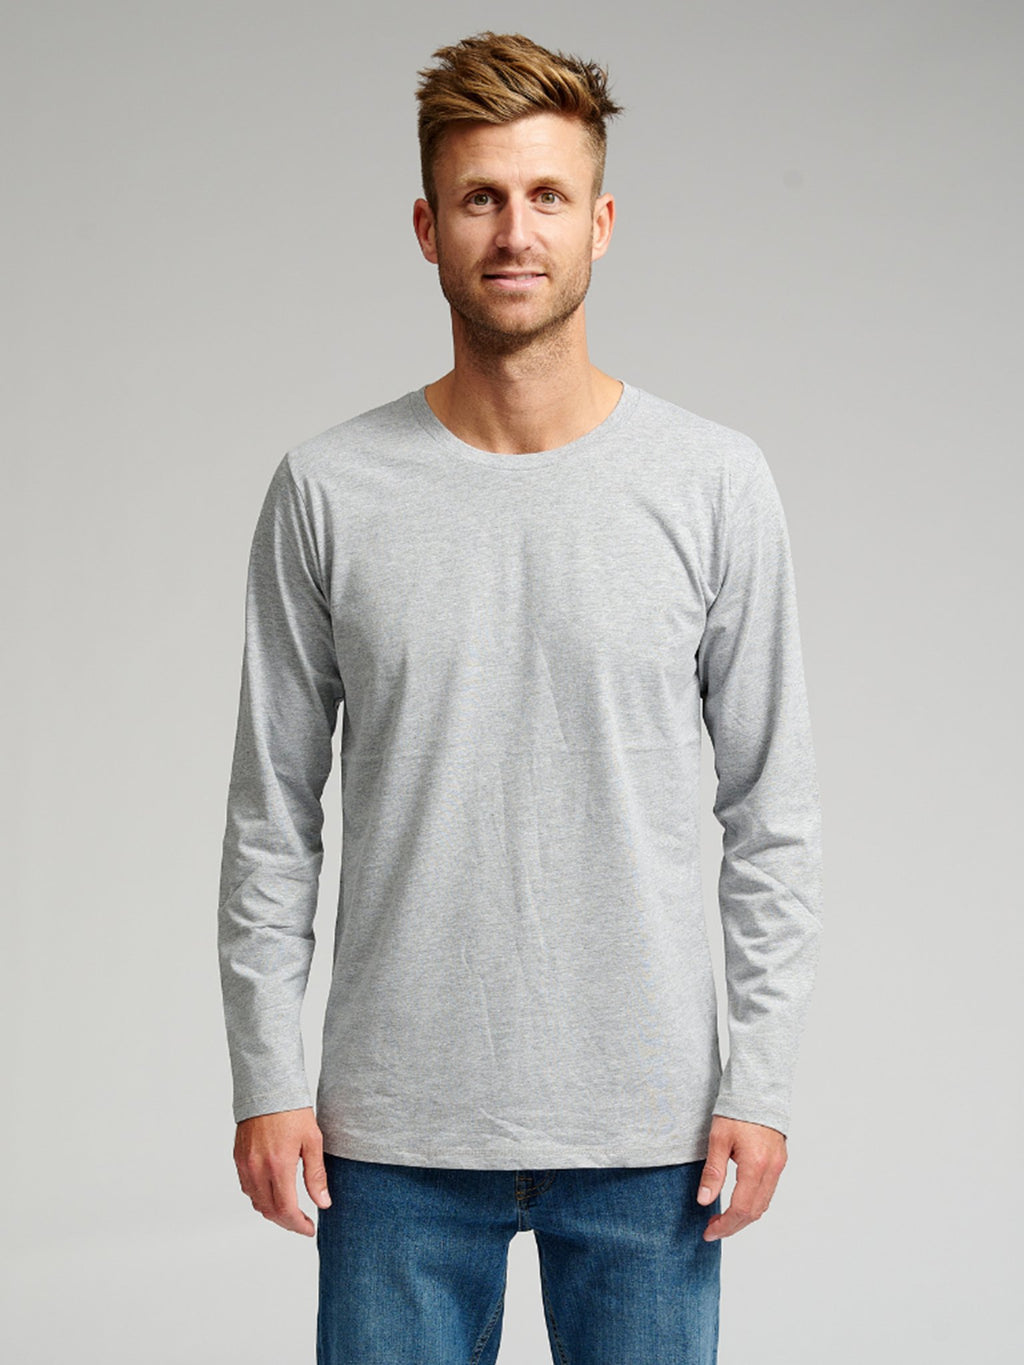 Basic Long-sleeved T-shirt - Gray